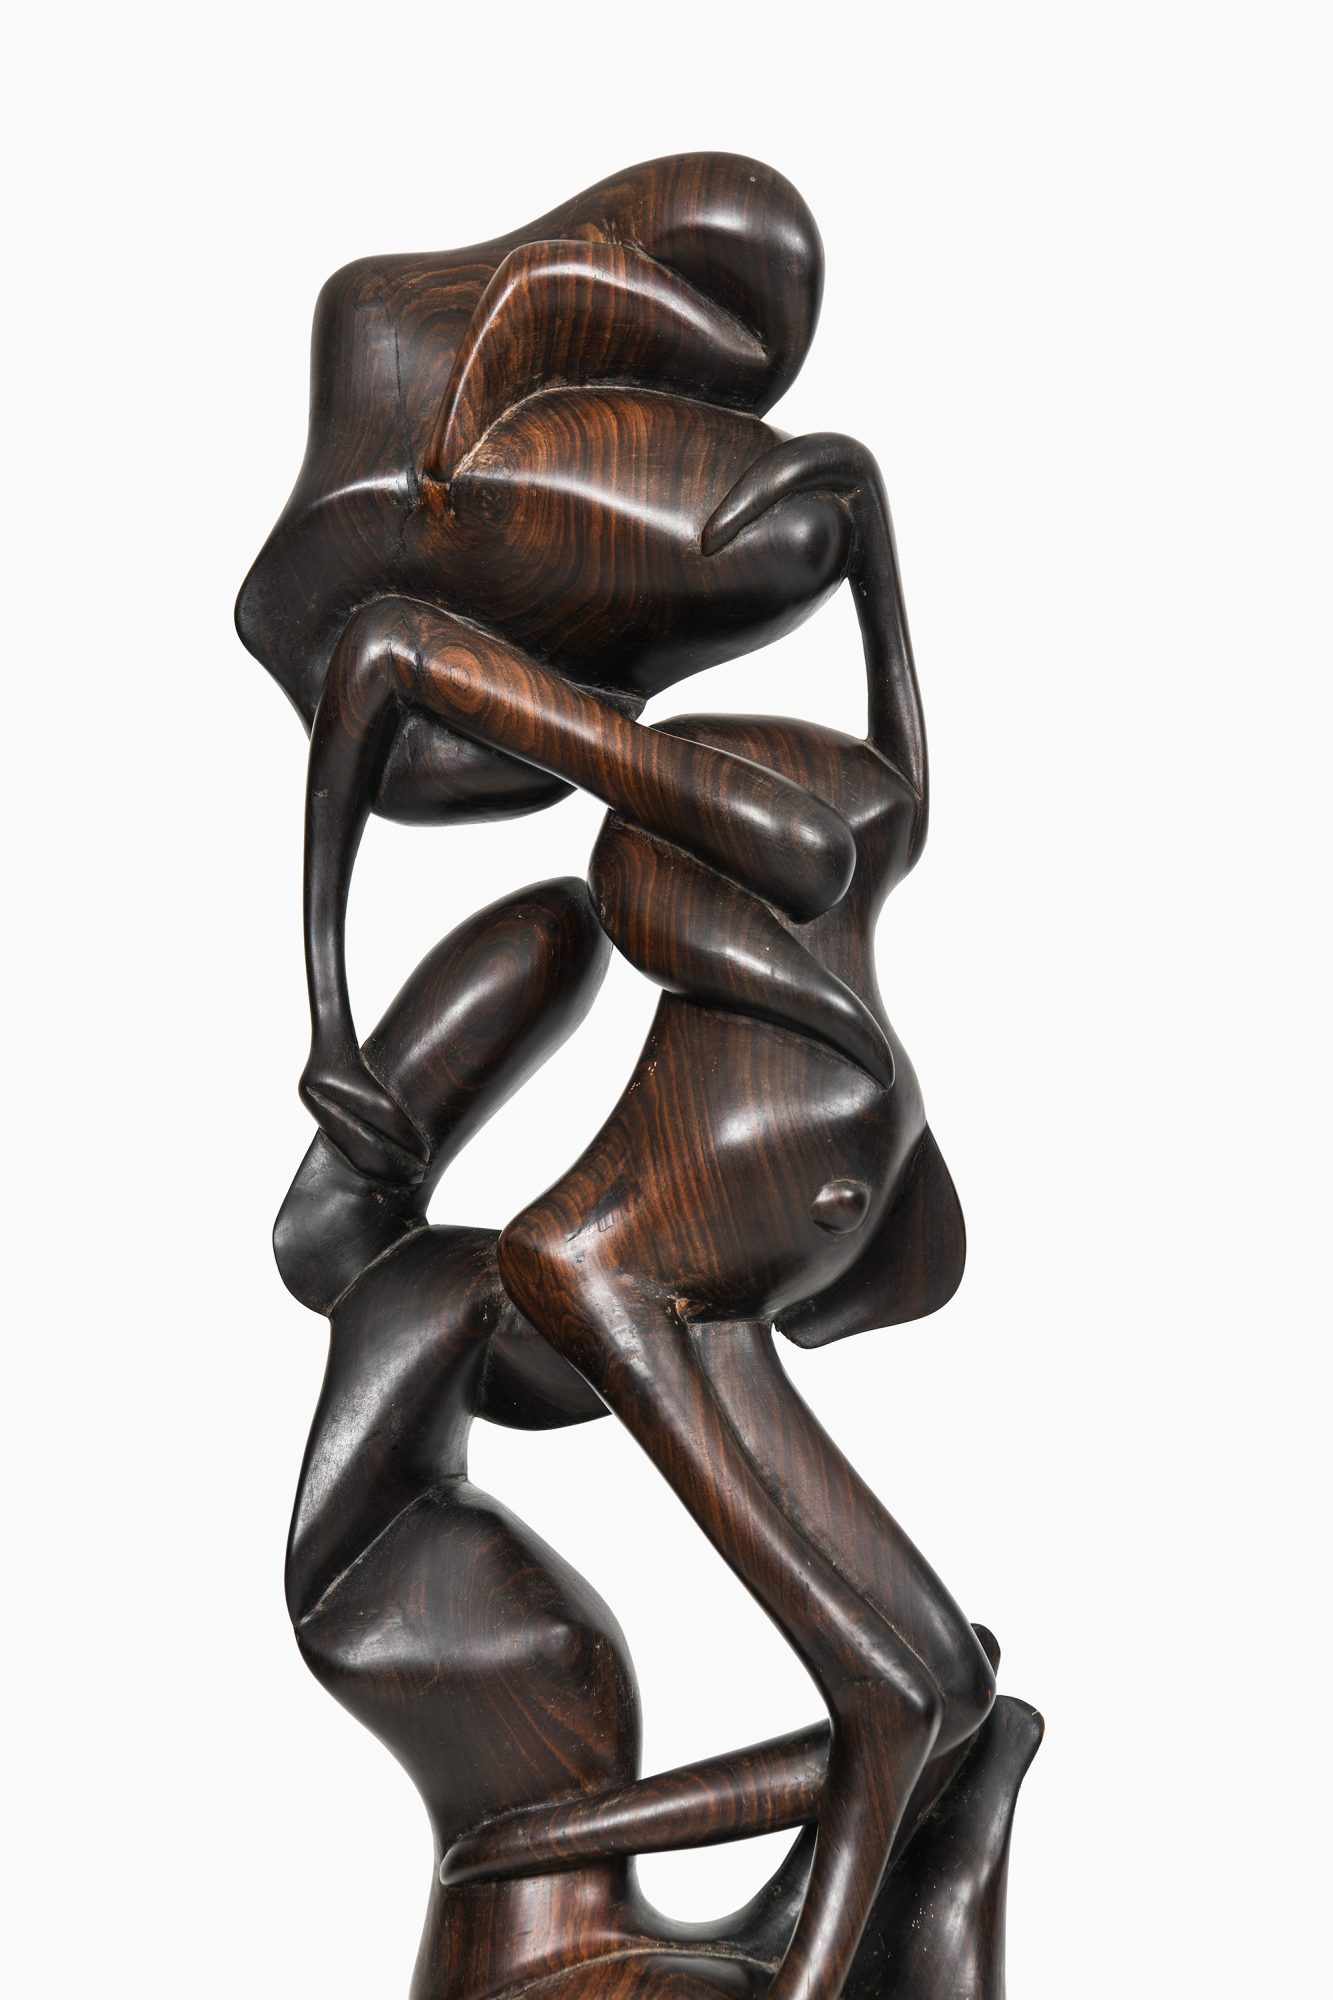 Sculpture in cocobolo wood at Studio Schalling